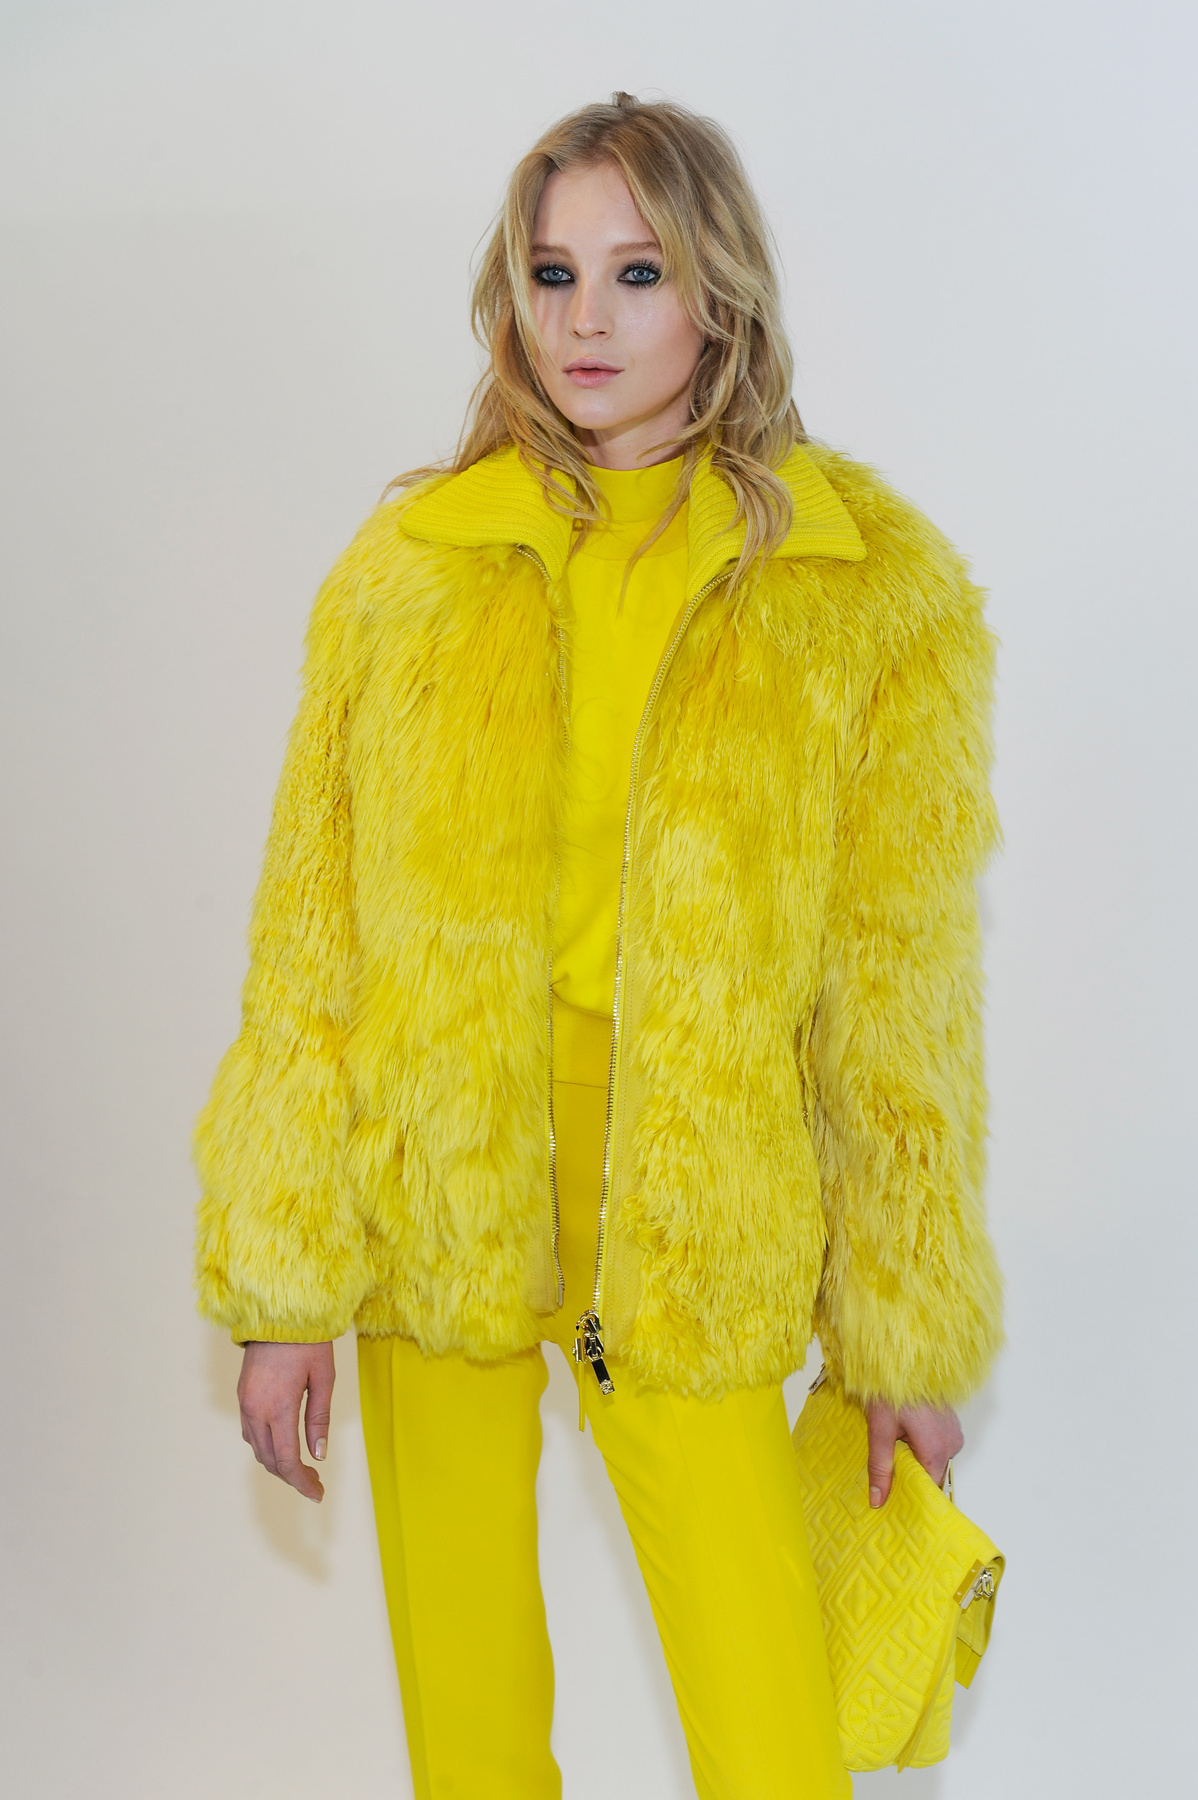 Sárga szett a Versace 2015-ös őszi-téli kollekciójából.


